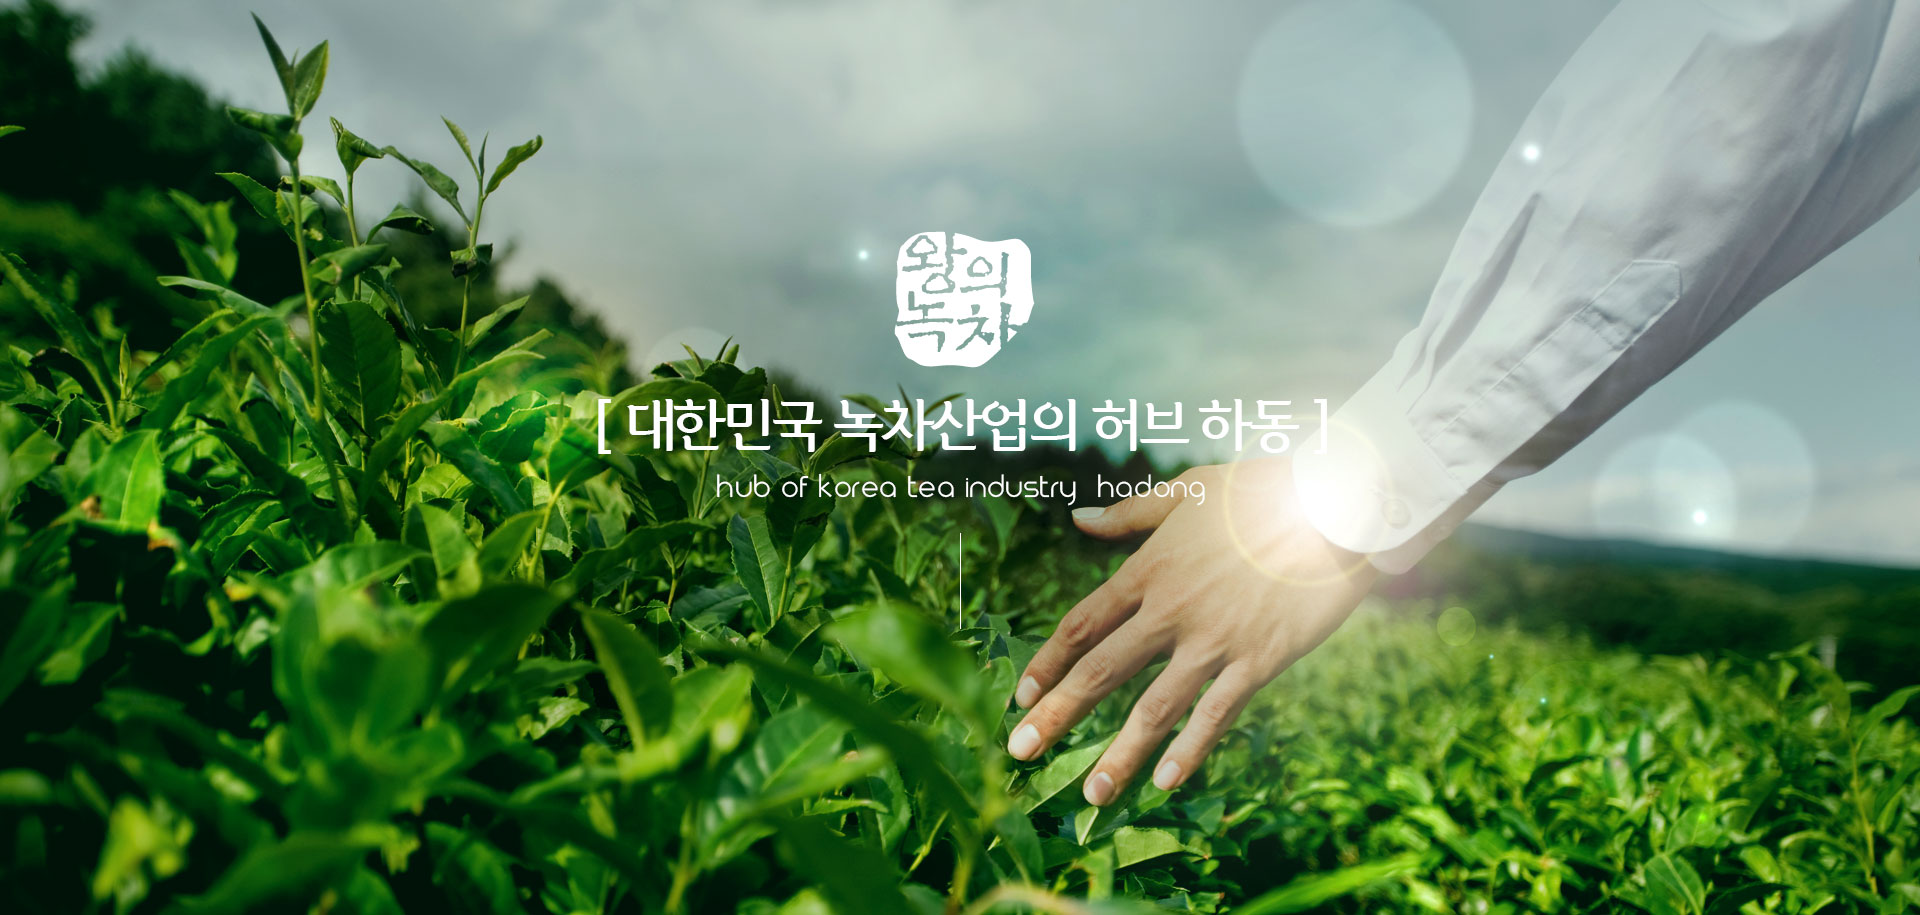 왕의녹차. [ 대한민국 녹차산업의 허브 하동 ] Hub of korea tea industry, hadong